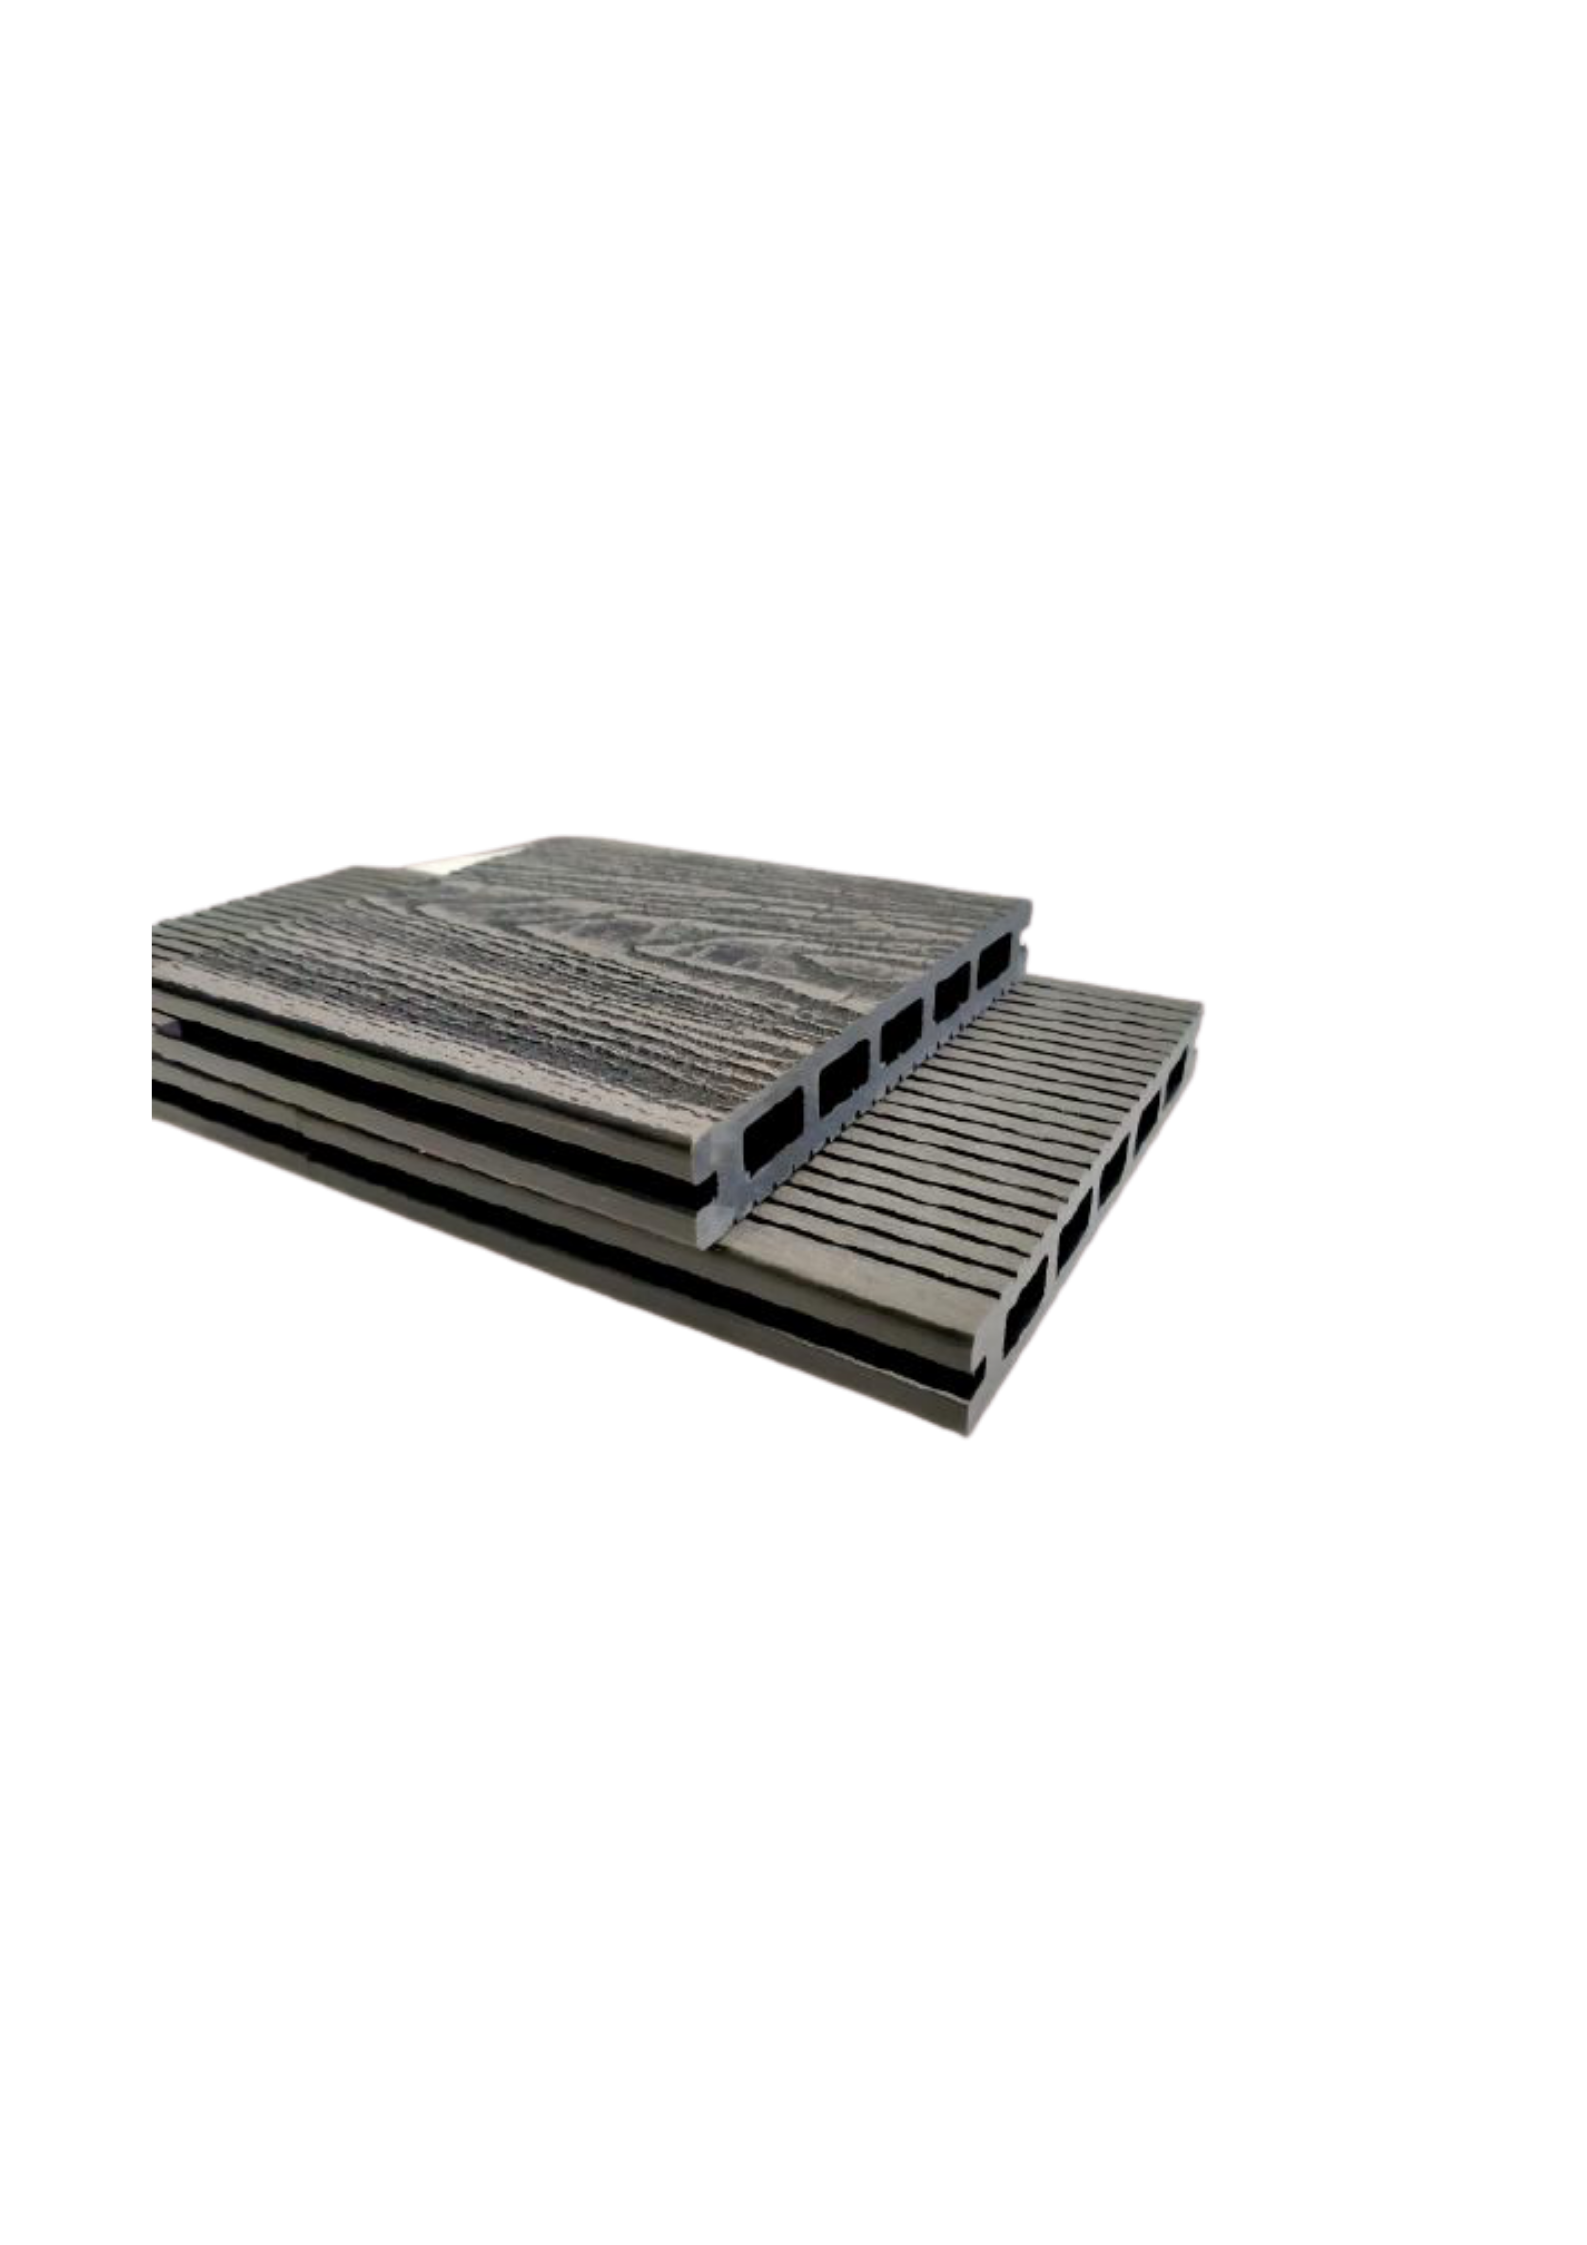 3D Hollow Composite Decking Boards 145 x 21 x 5400mm Black Colour